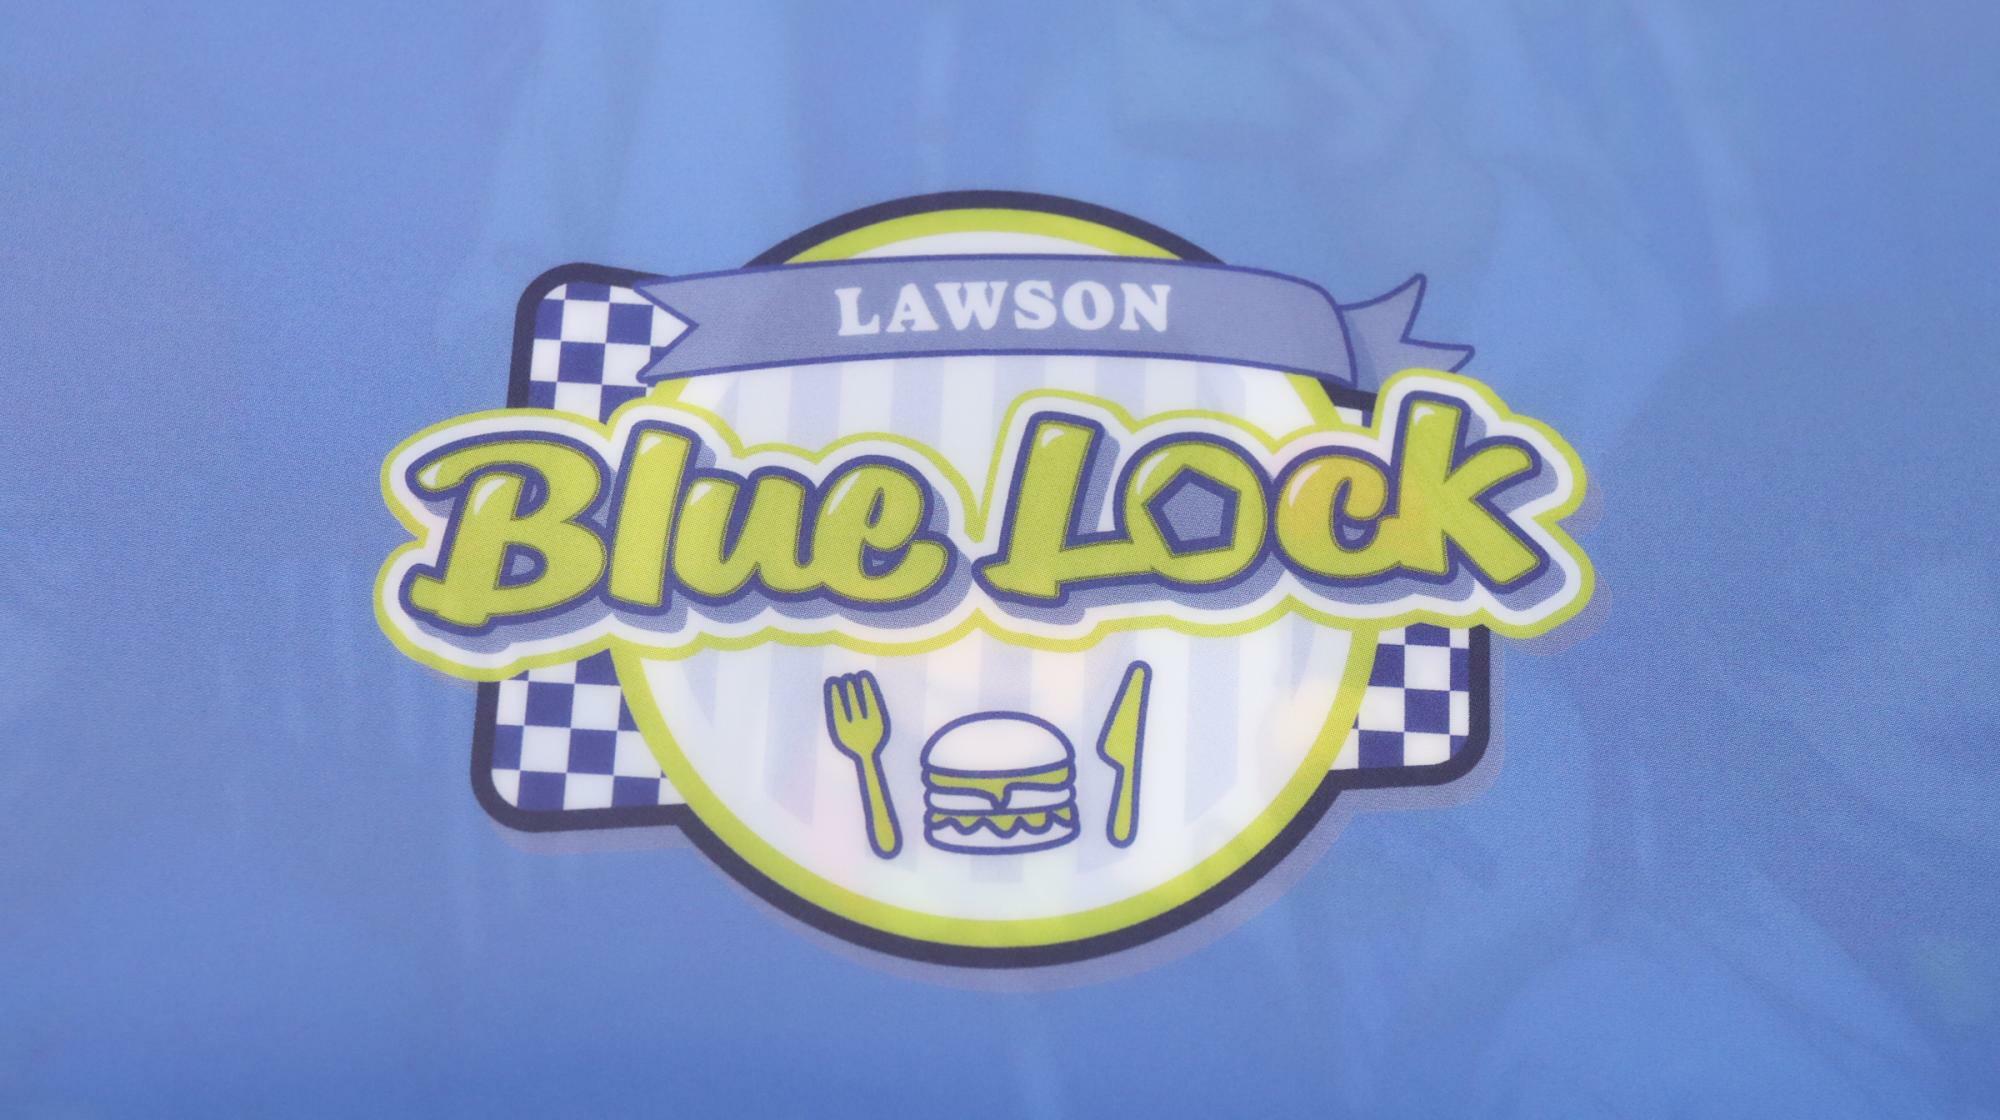 ローソンとブルーロックのコラボで使用されているロゴ